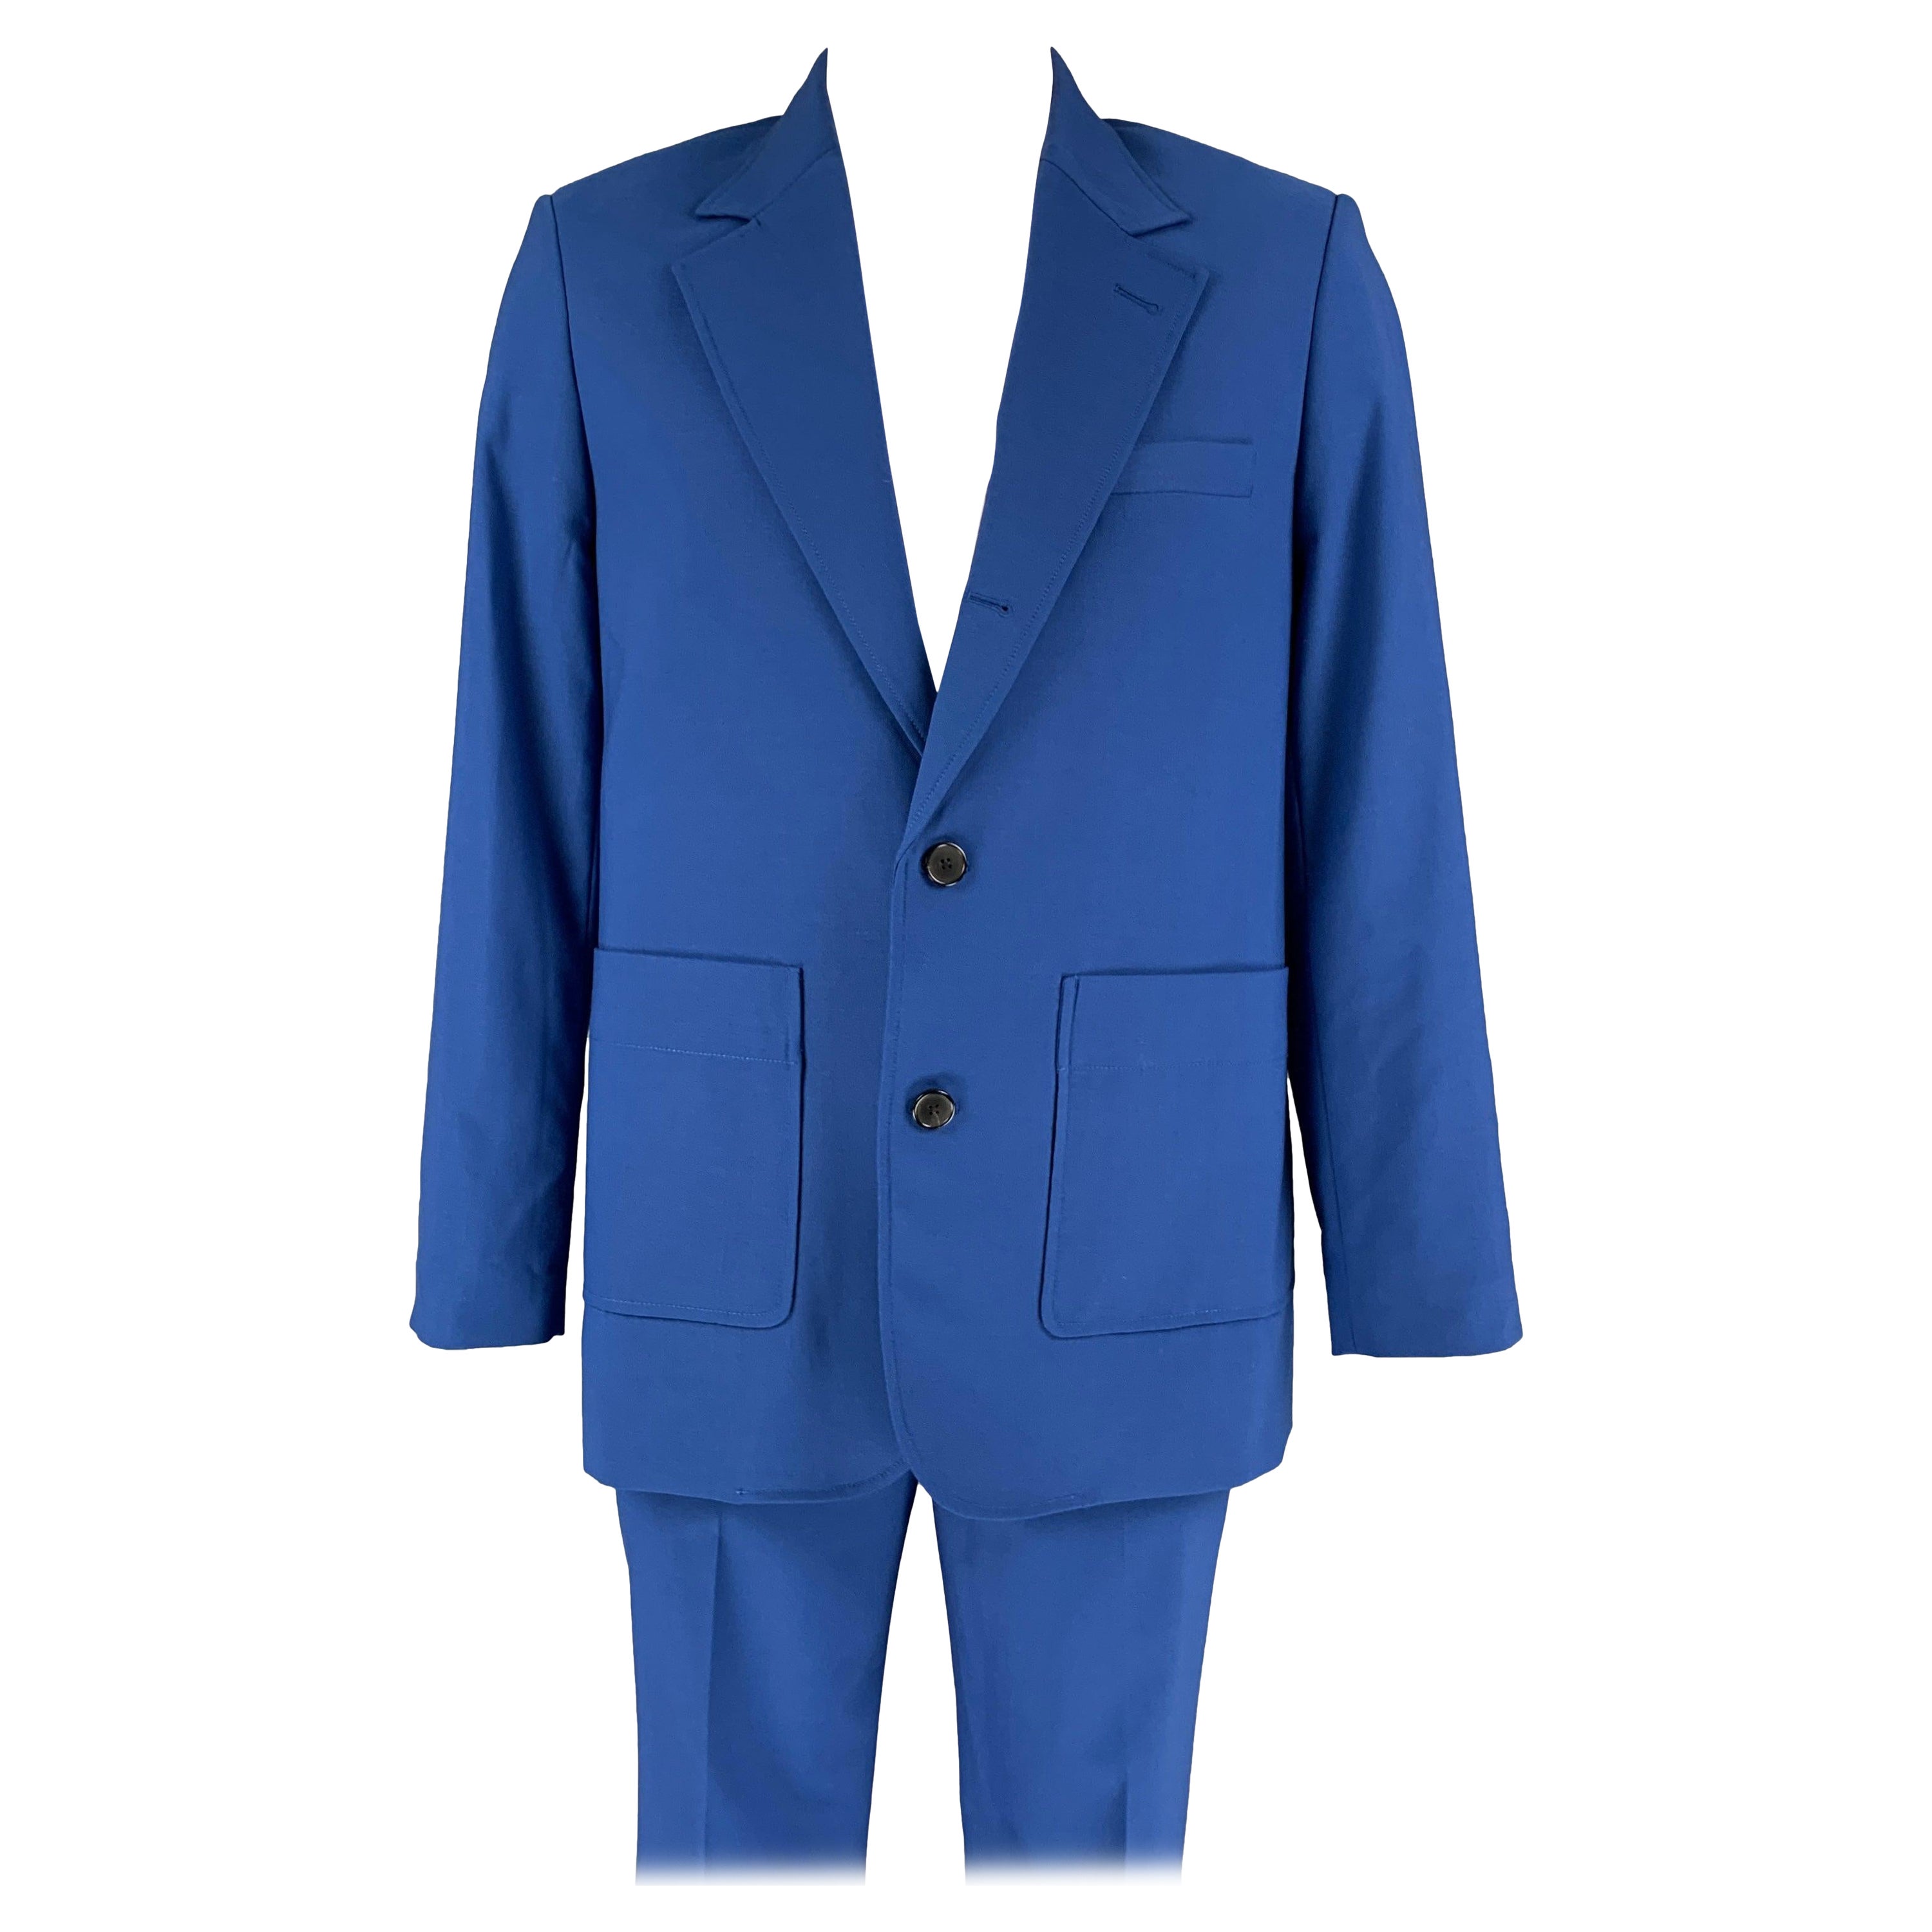 3.1 PHILLIP LIM Size 40 Royal Blue Wool Blend Notch Lapel Suit For Sale